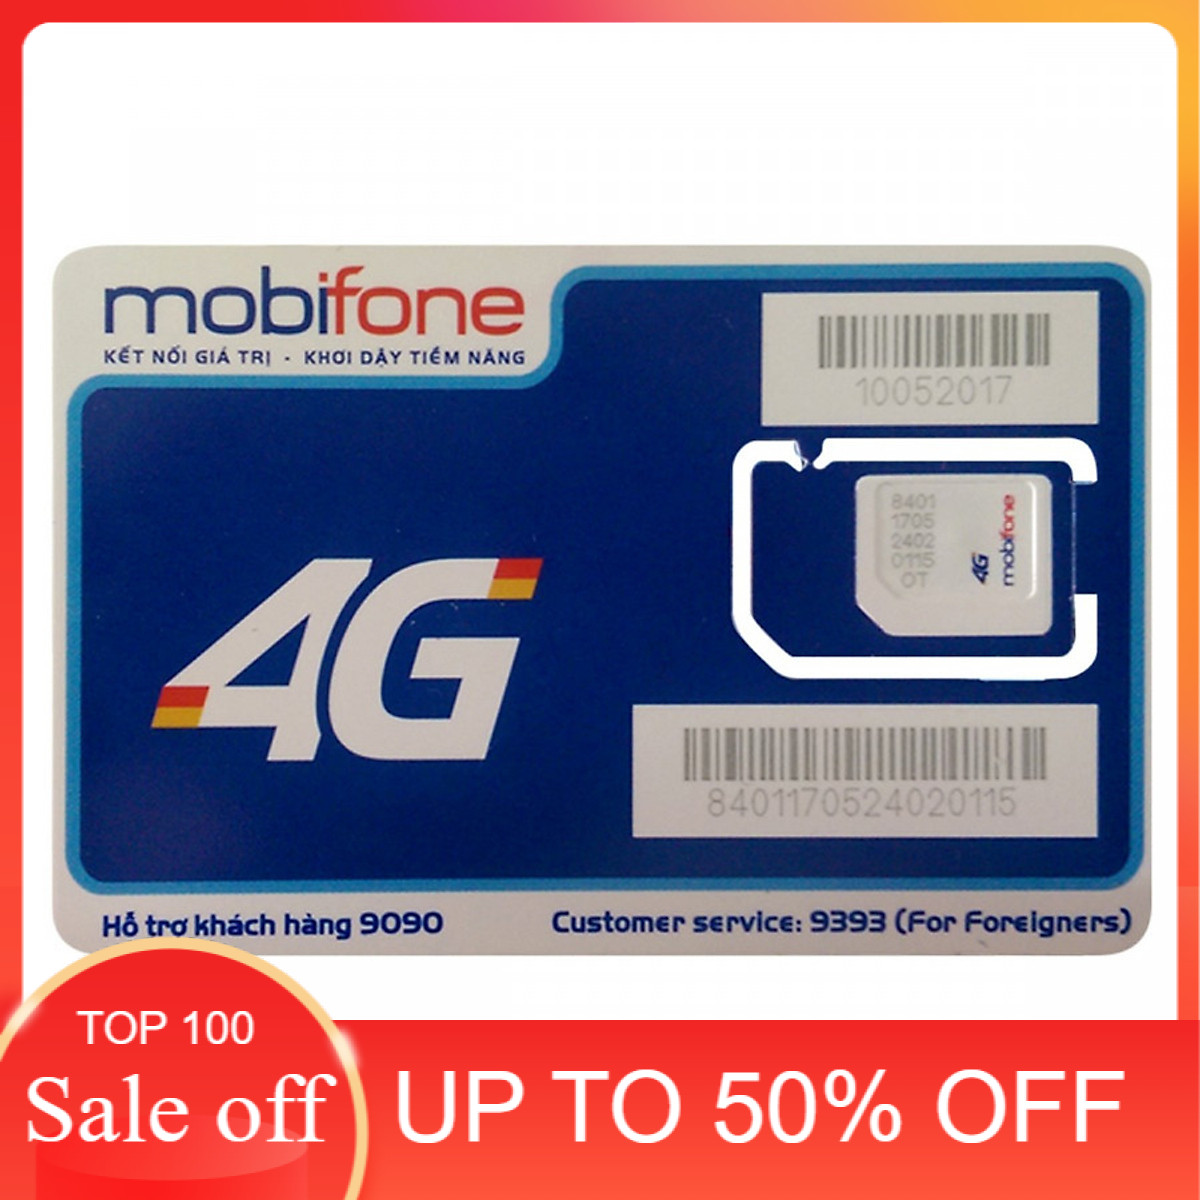 Hot SIM 4G Mobifone MC90 gọi miễn phí dưới 10 phút nội mạng